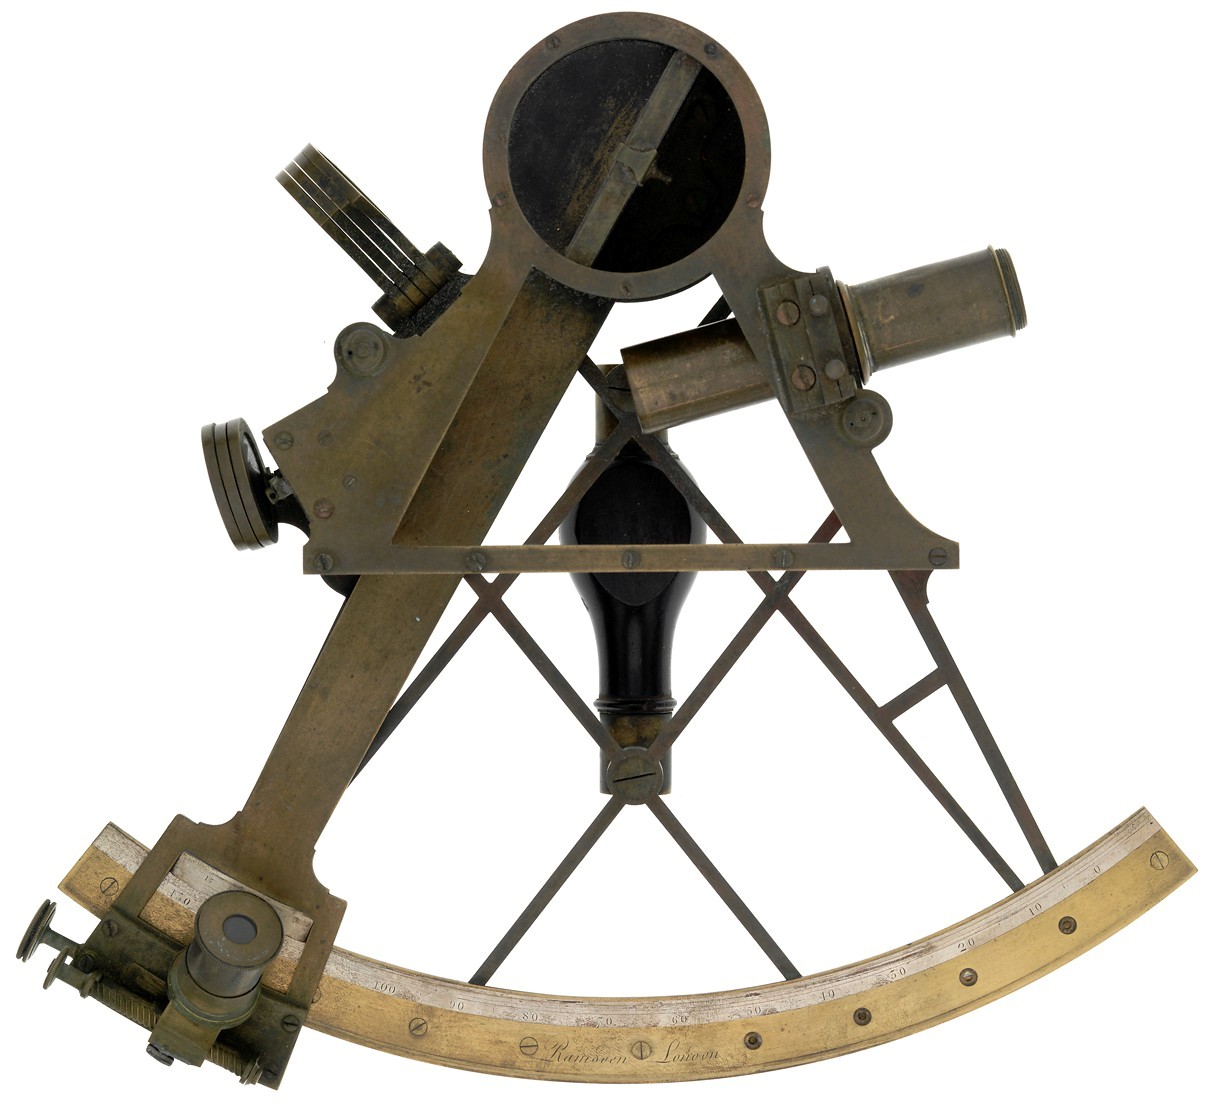 Copy of Ramsden sextant